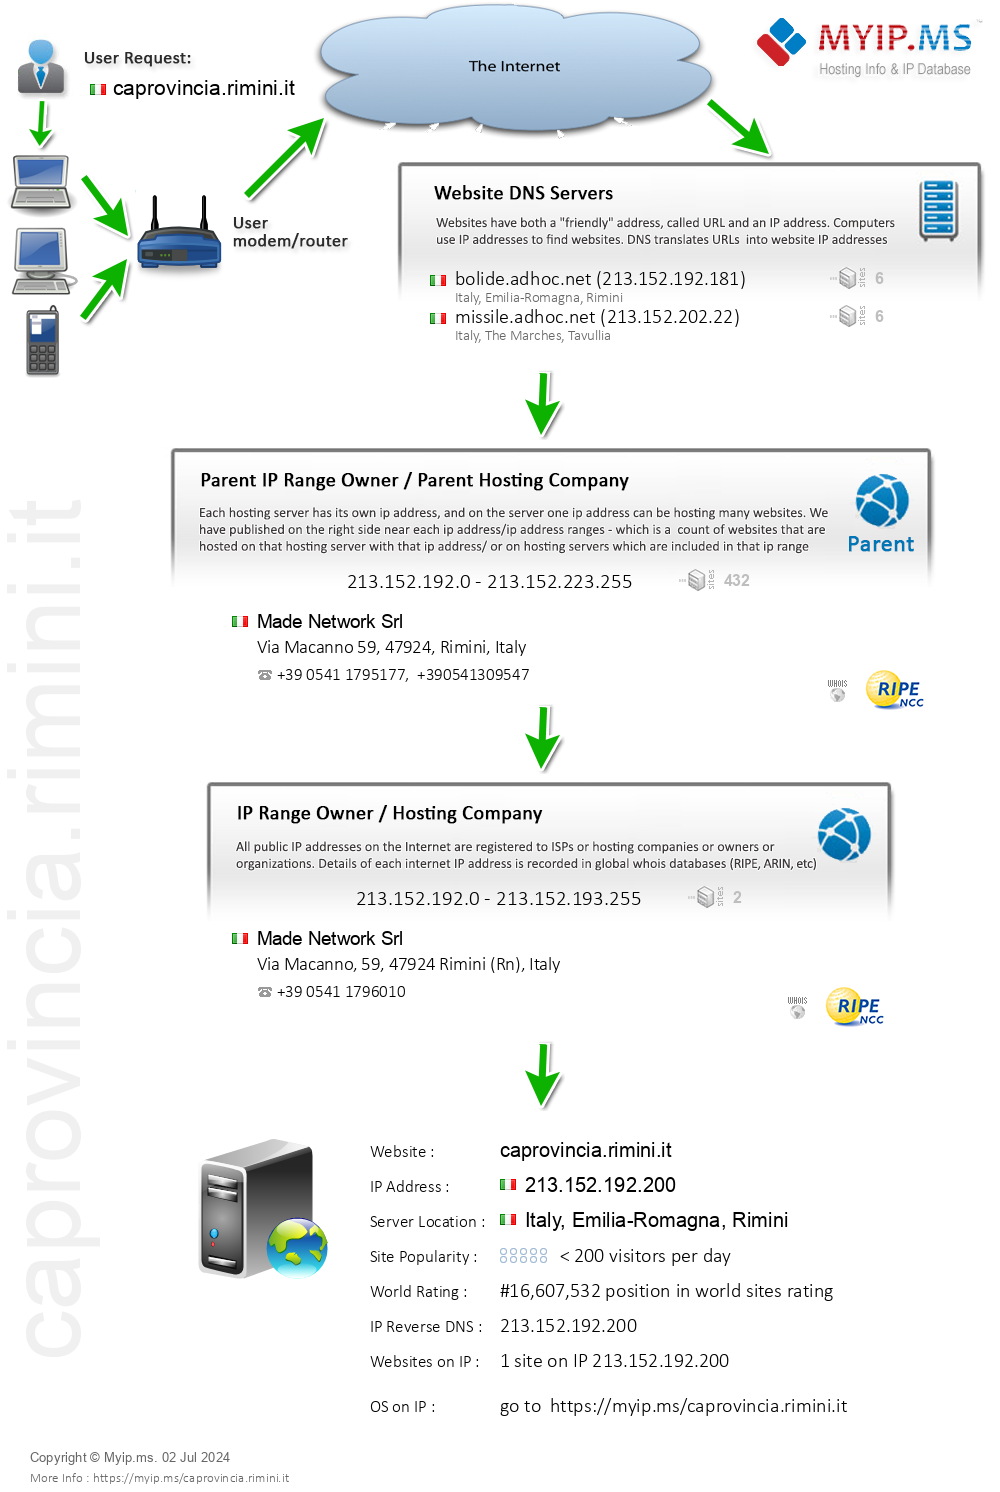 Caprovincia.rimini.it - Website Hosting Visual IP Diagram